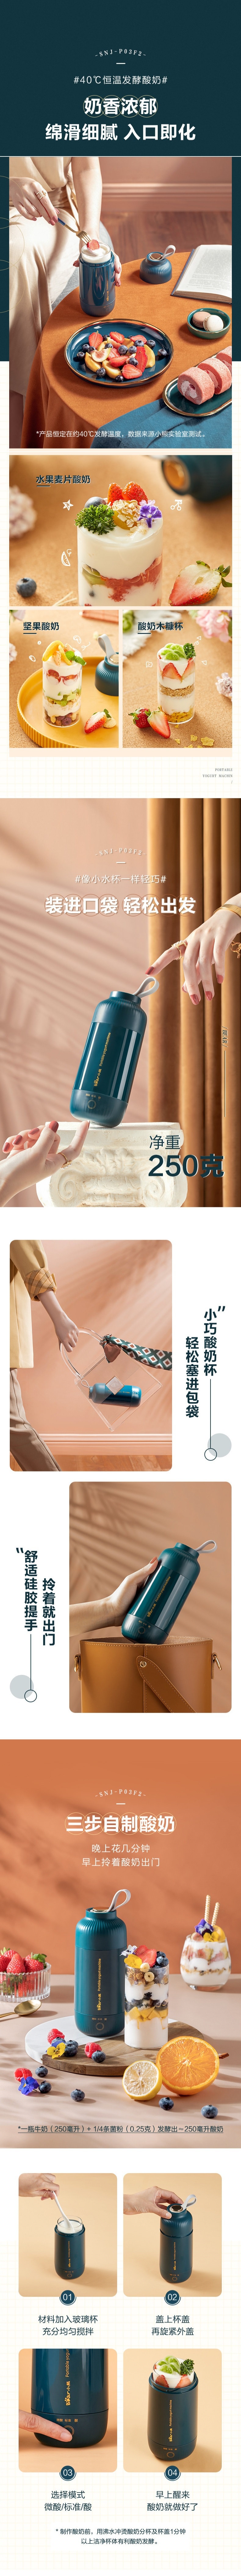 【中国直邮】Bear小熊 酸奶机 小型全自动迷你酸奶机 便携式酸奶杯 玻璃内胆 280ml USB充电